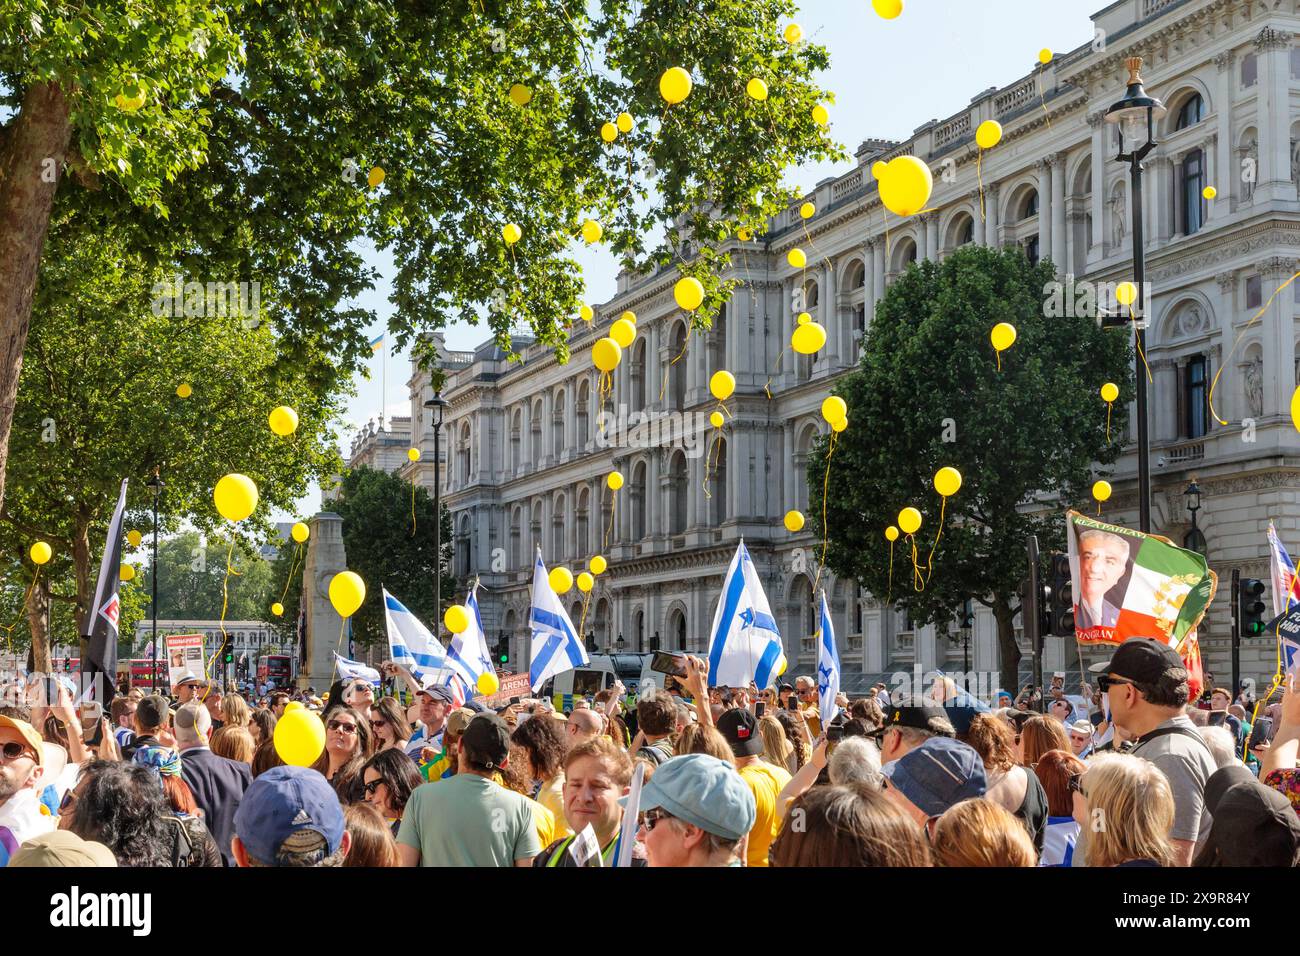 Londres, Royaume-Uni. 2 juin 2024. Des ballons jaunes ont été lâchés pour symboliser la libération des 125 otages encore retenus en captivité lors de la finale d’un événement qui a vu des milliers de personnes marcher à travers Londres dans le cadre de l’appel à l’unité mondiale pour ramener les otages à la maison maintenant, un événement de solidarité est organisé dans 24 pays à travers le monde, s'unissant pour exiger la libération immédiate des otages. L'événement comprenait une gamme de conférenciers, y compris des membres de la famille de certains des 125 otages encore détenus en captivité, et des spectacles musicaux par des artistes israéliens. Crédit : Amanda Rose/Alamy Live News Banque D'Images